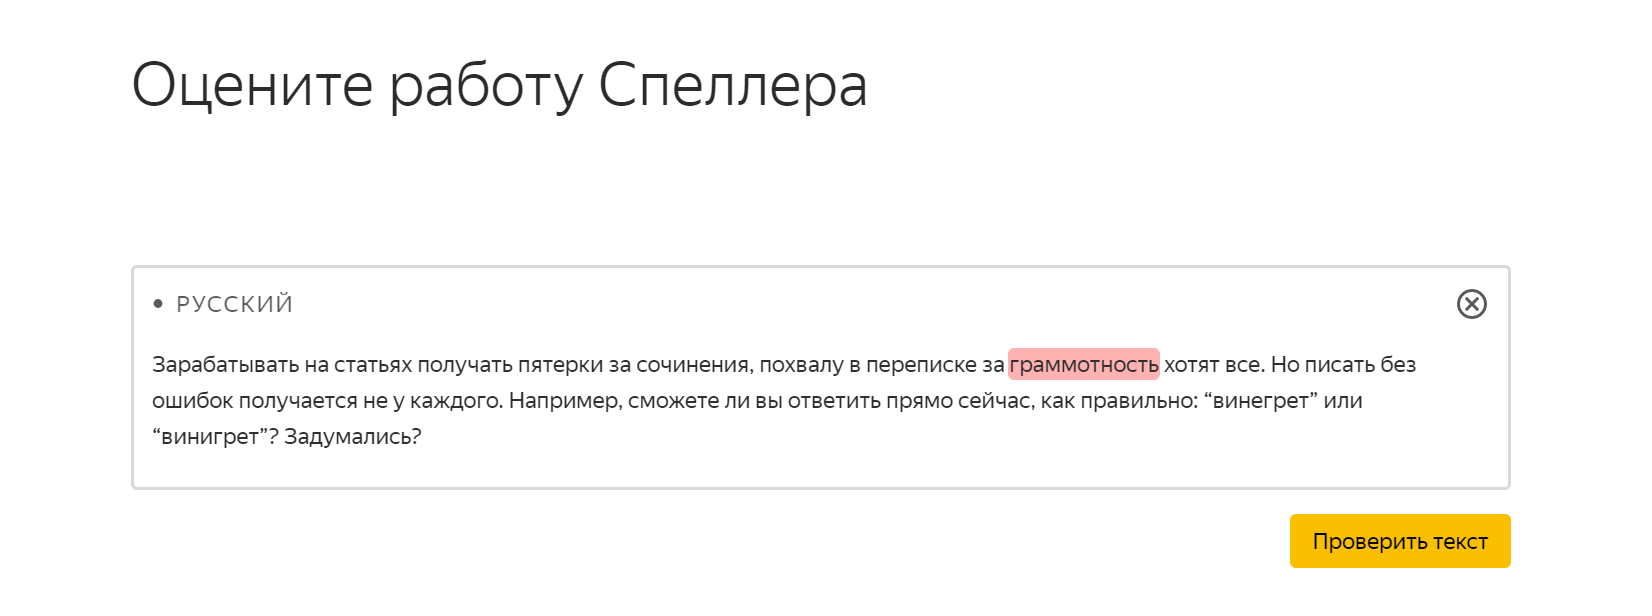 Поиск ошибок в Яндекс.Спеллере